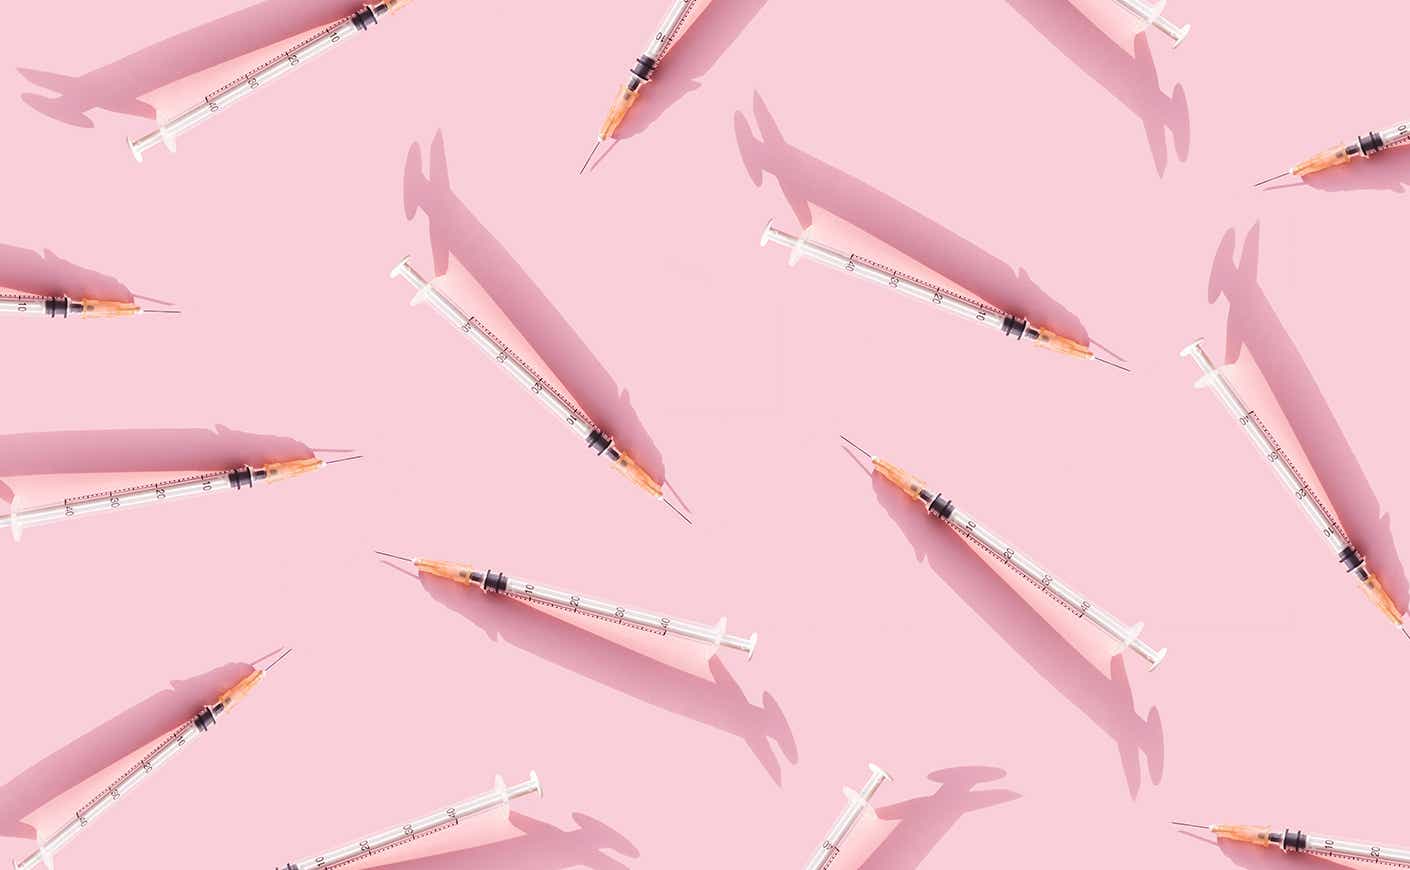 syringes on a light pink background